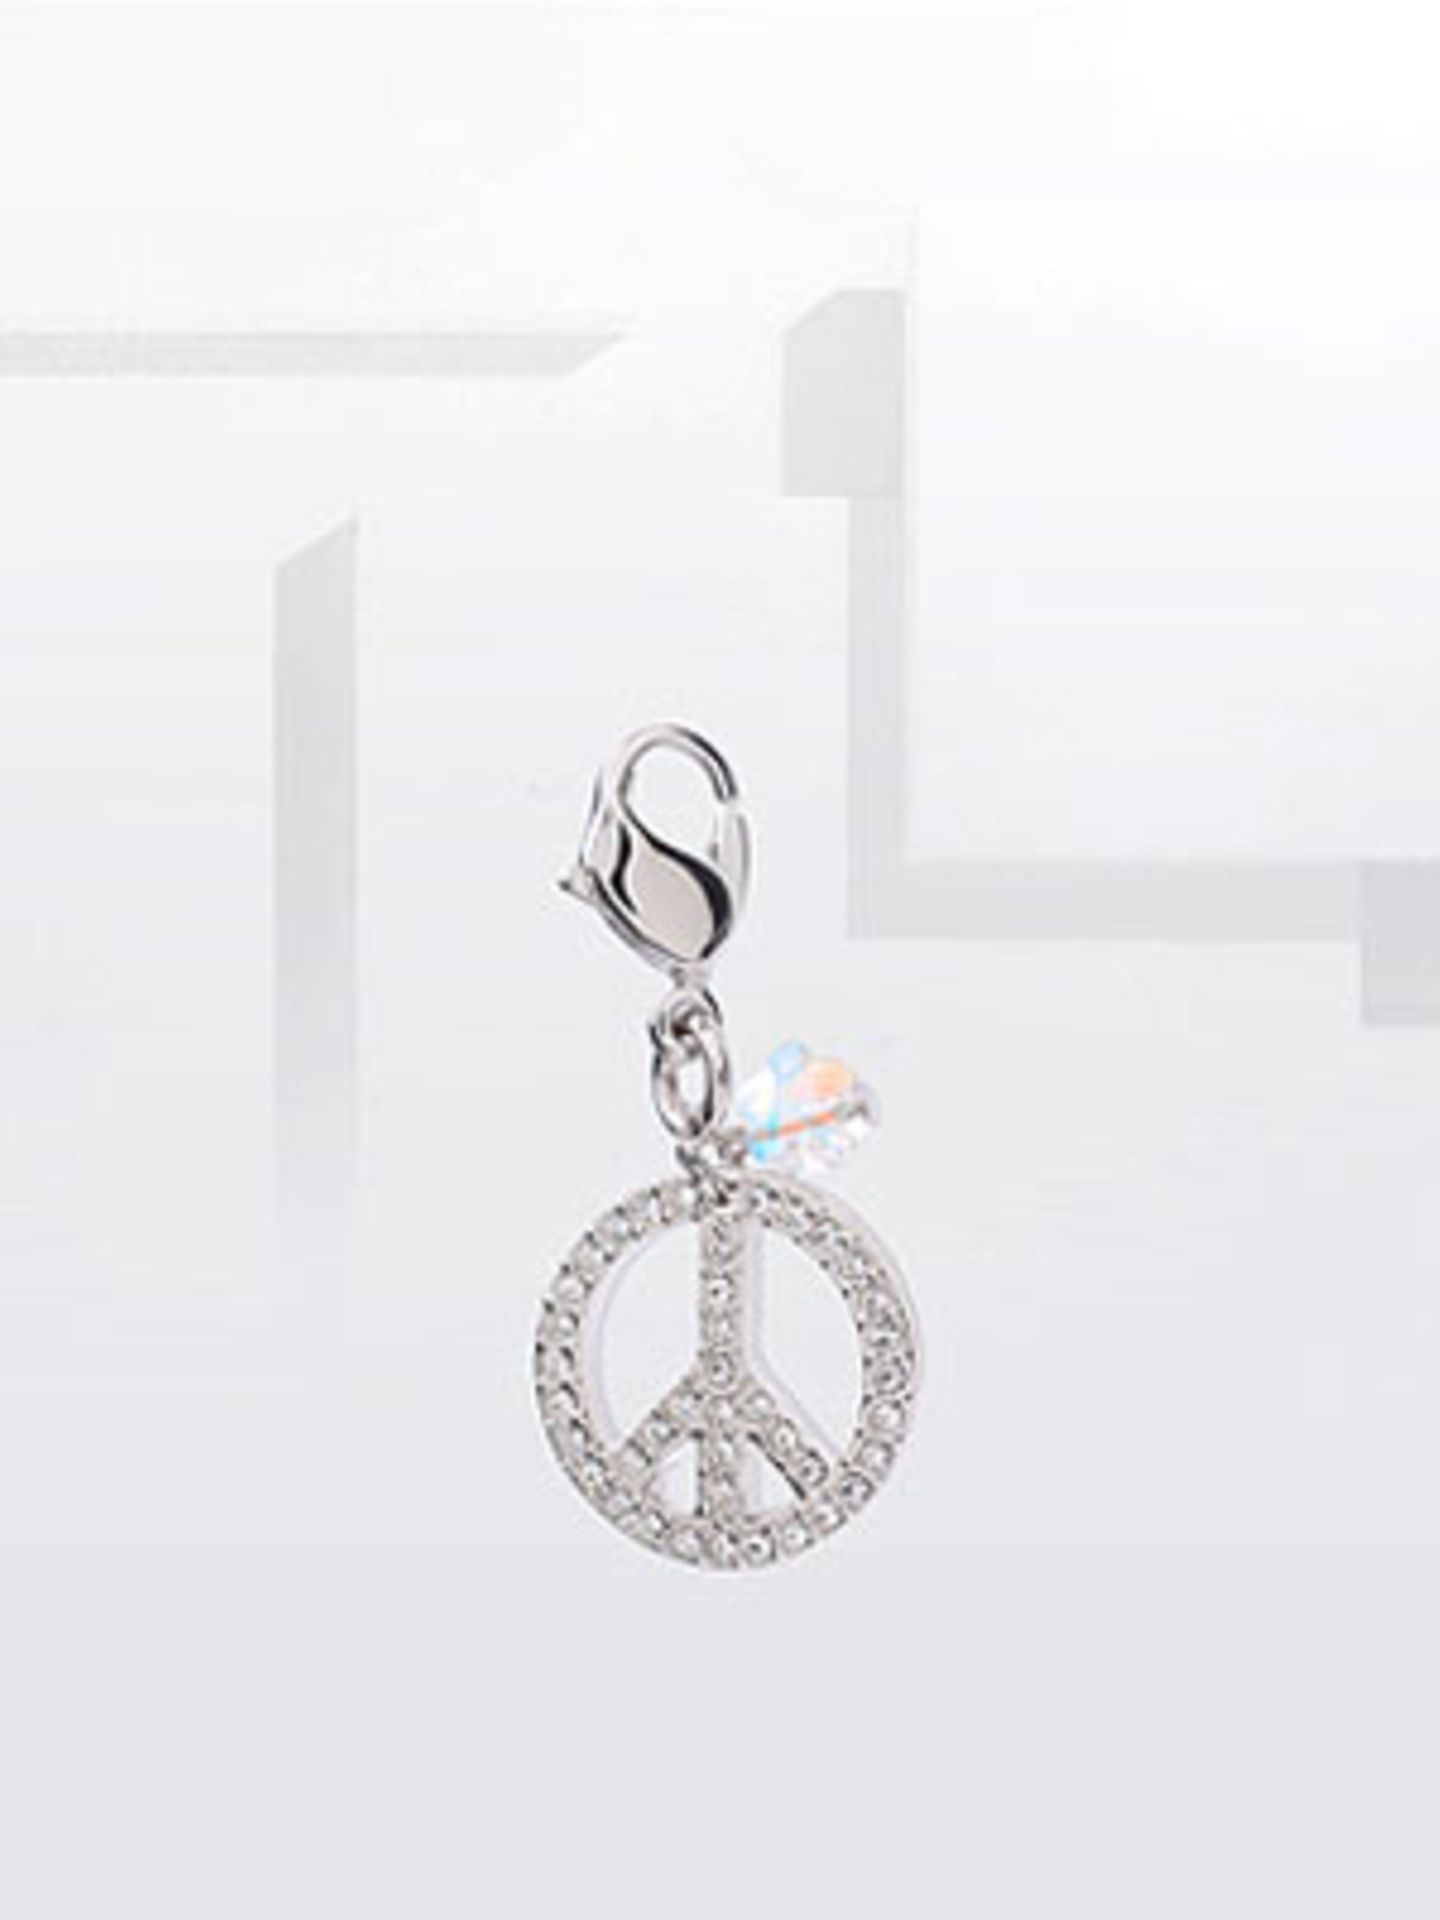 Schlüsselanhänger mit Peace-Symbol aus Swarovski-Steinen von ASOS, um 40 Euro.